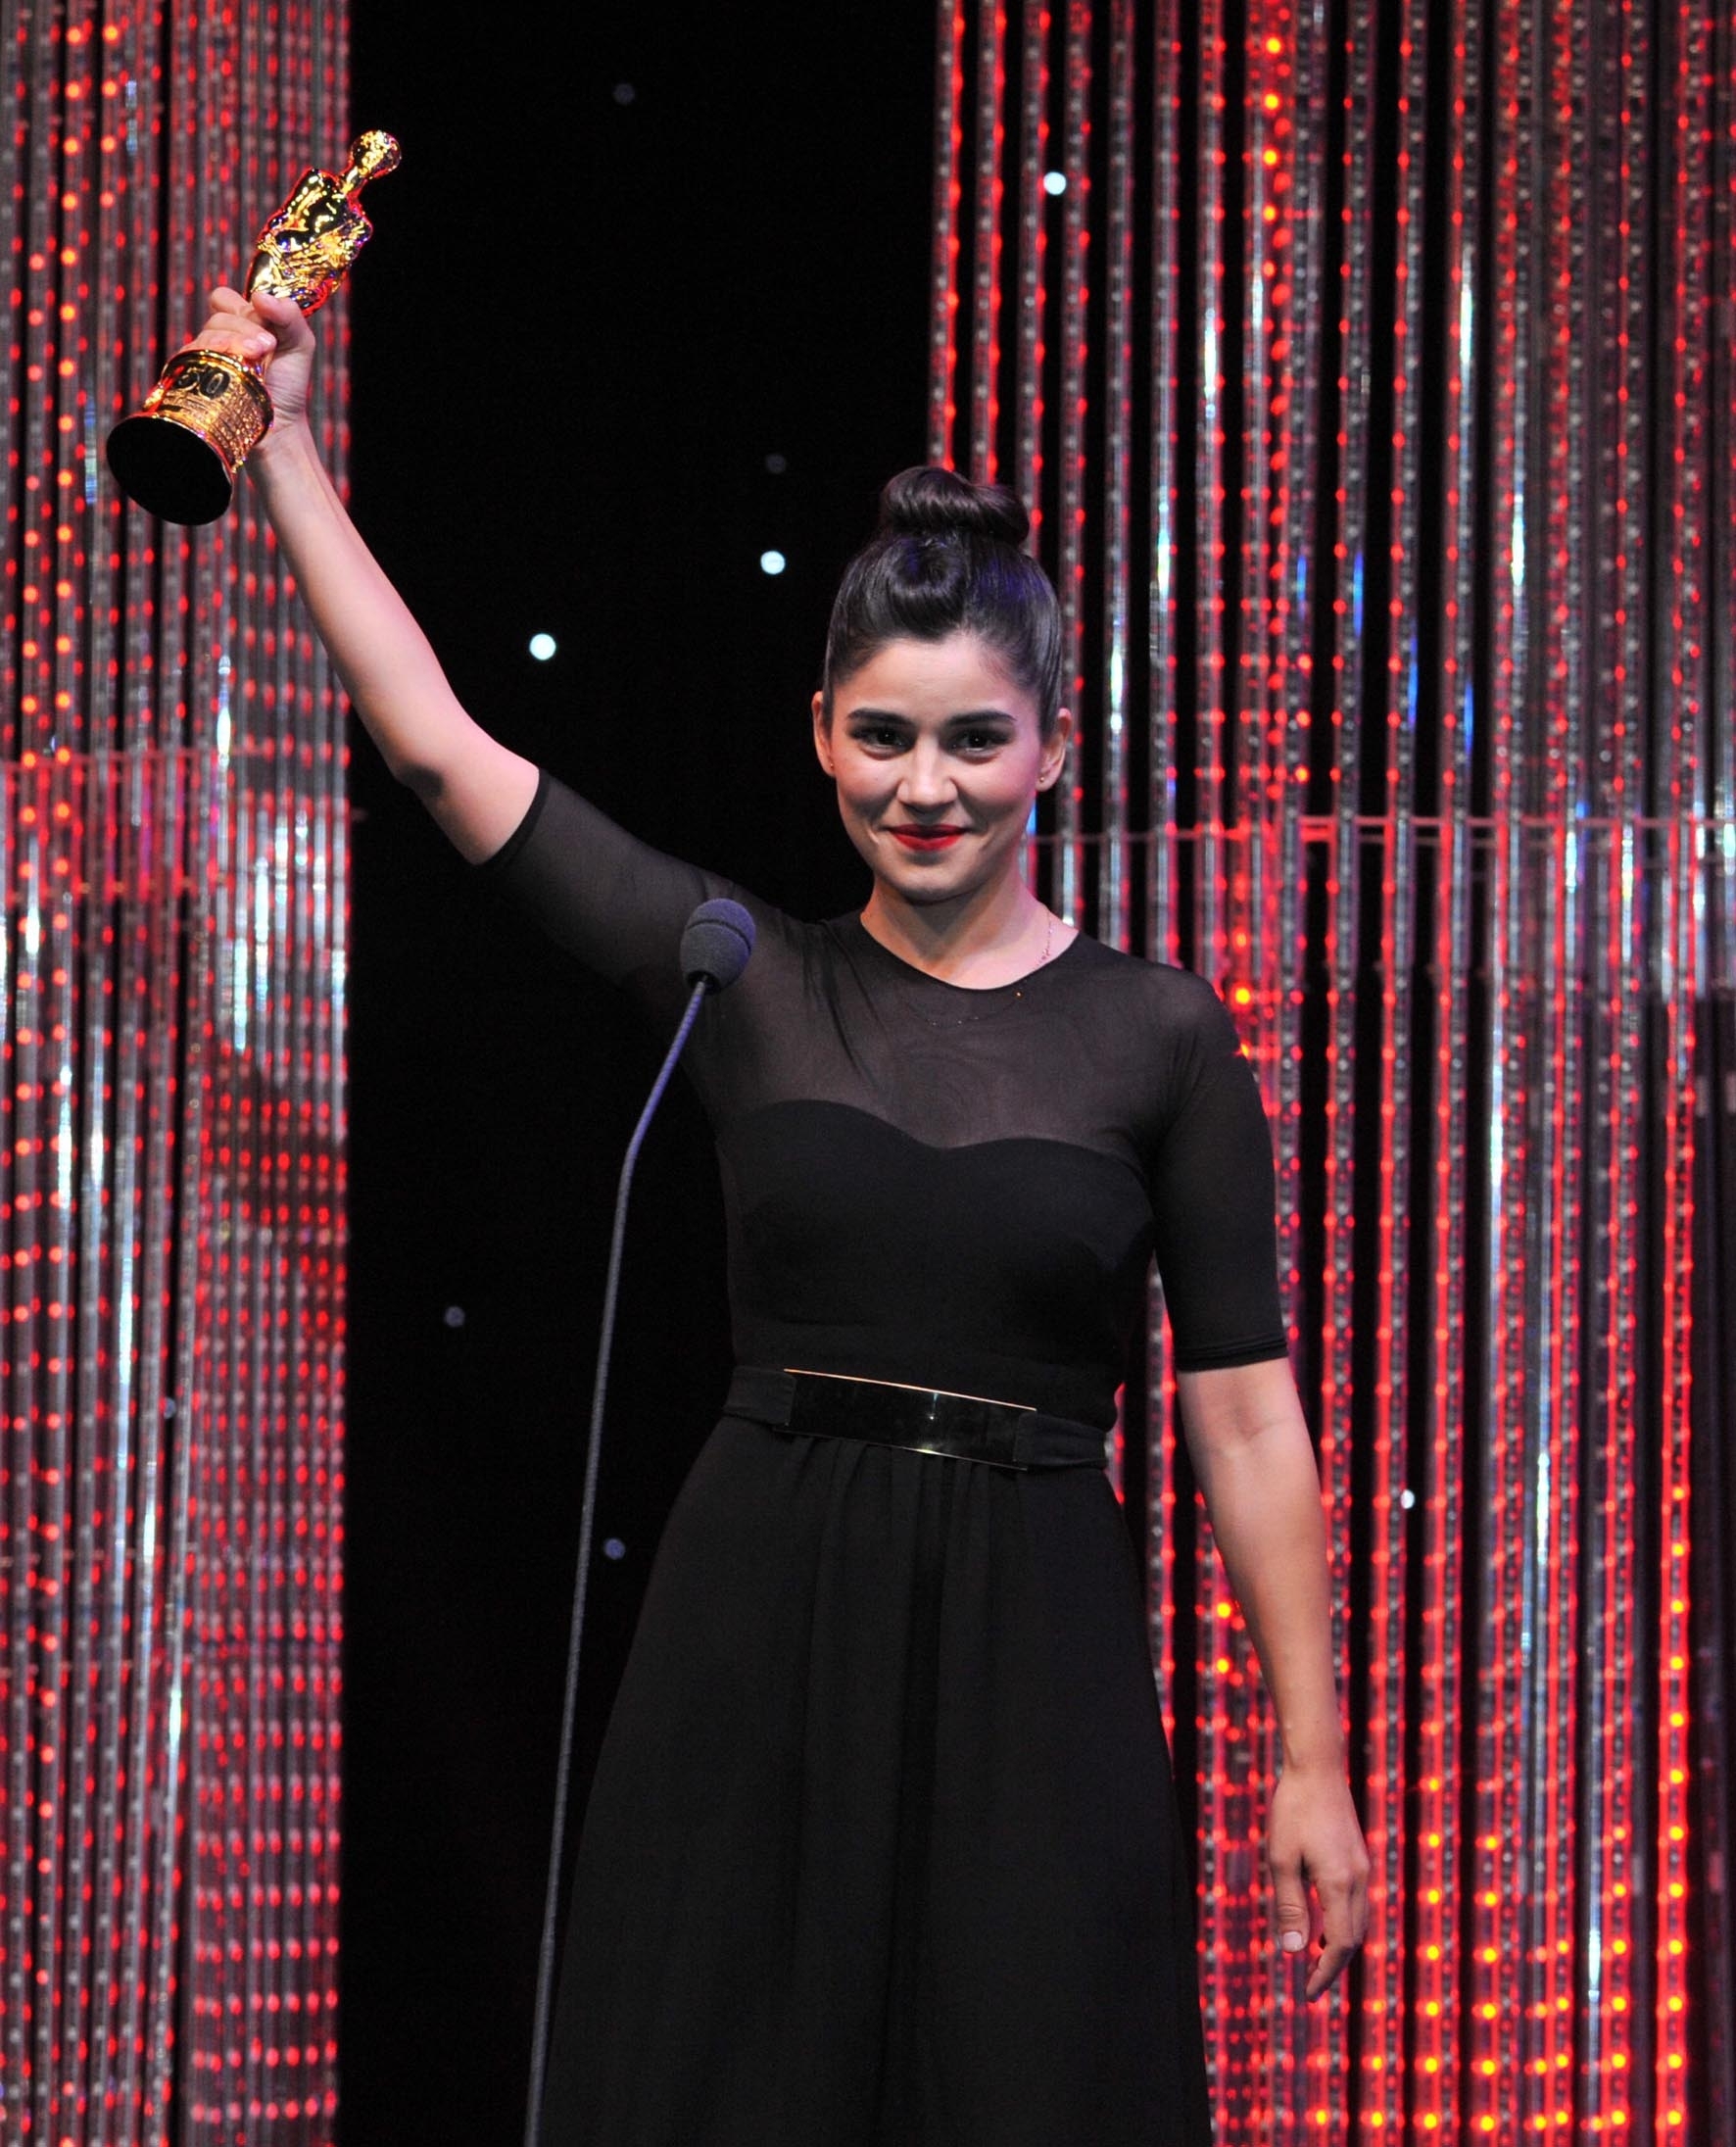 Won Golden Orange Best Actress for Meryem (2013) Zeynep Çamcı Manager & Legal Representative: Serdesin Contact: ser@serdesin.com www.serdesin.com